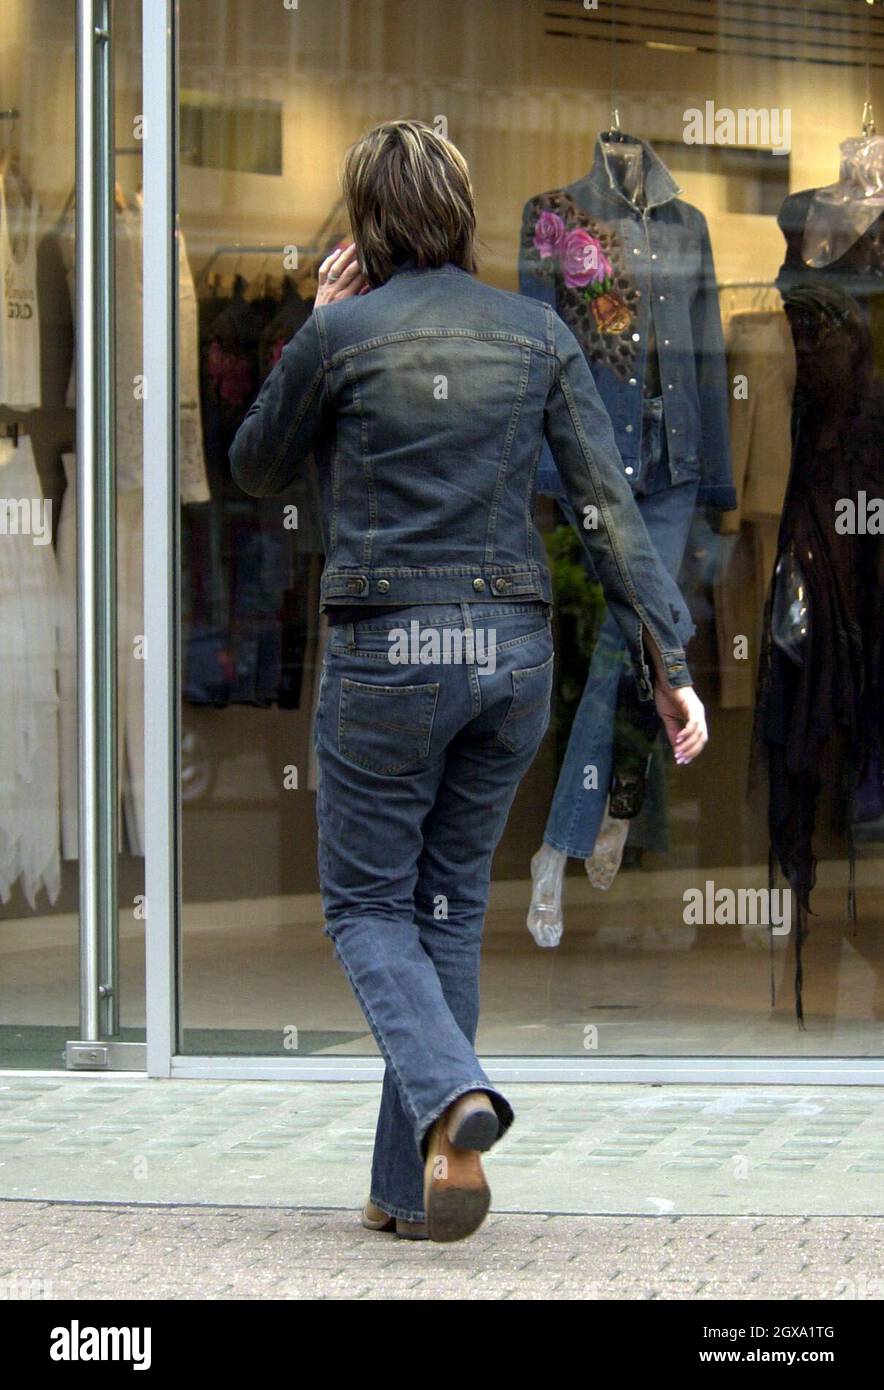 Victoria Beckham saliendo de la tienda ''RICCI BURNS'' en el SW de Londres después de comprar su traje para la fiesta del domingo ''Beckingham Palace'' fotografiado saliendo con su hermano Christian